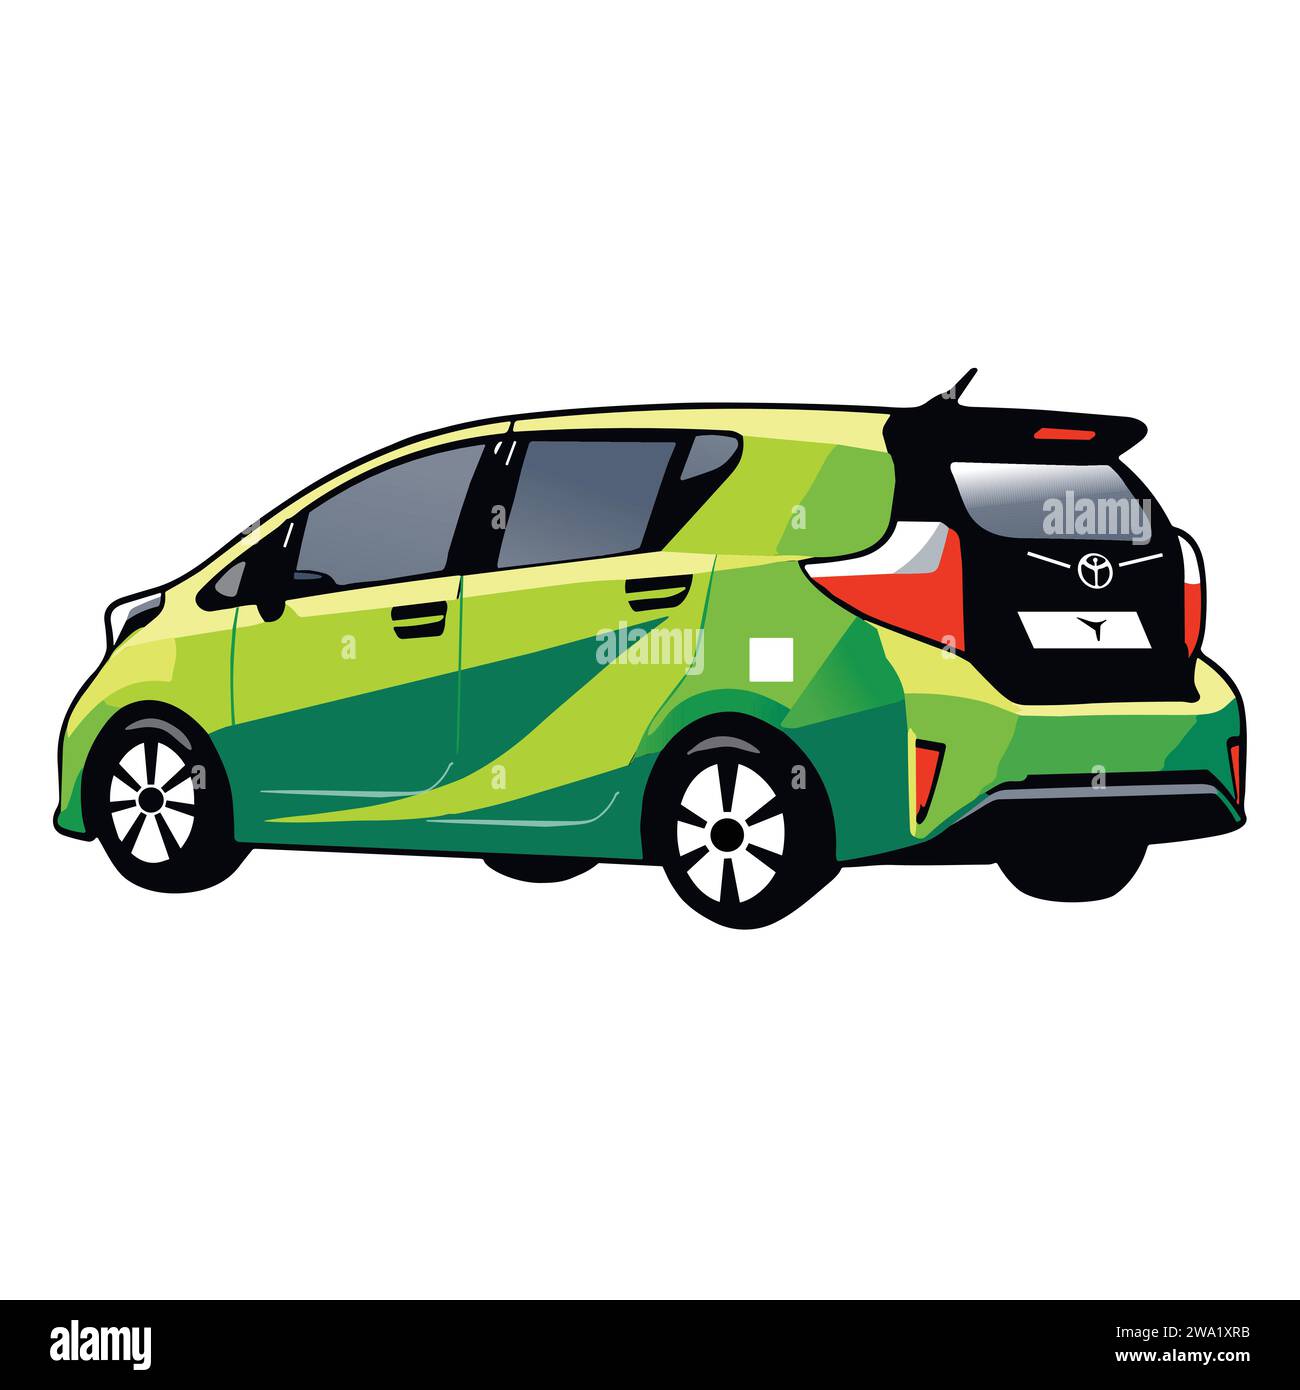 Toyota Green car vector design Stock Vector